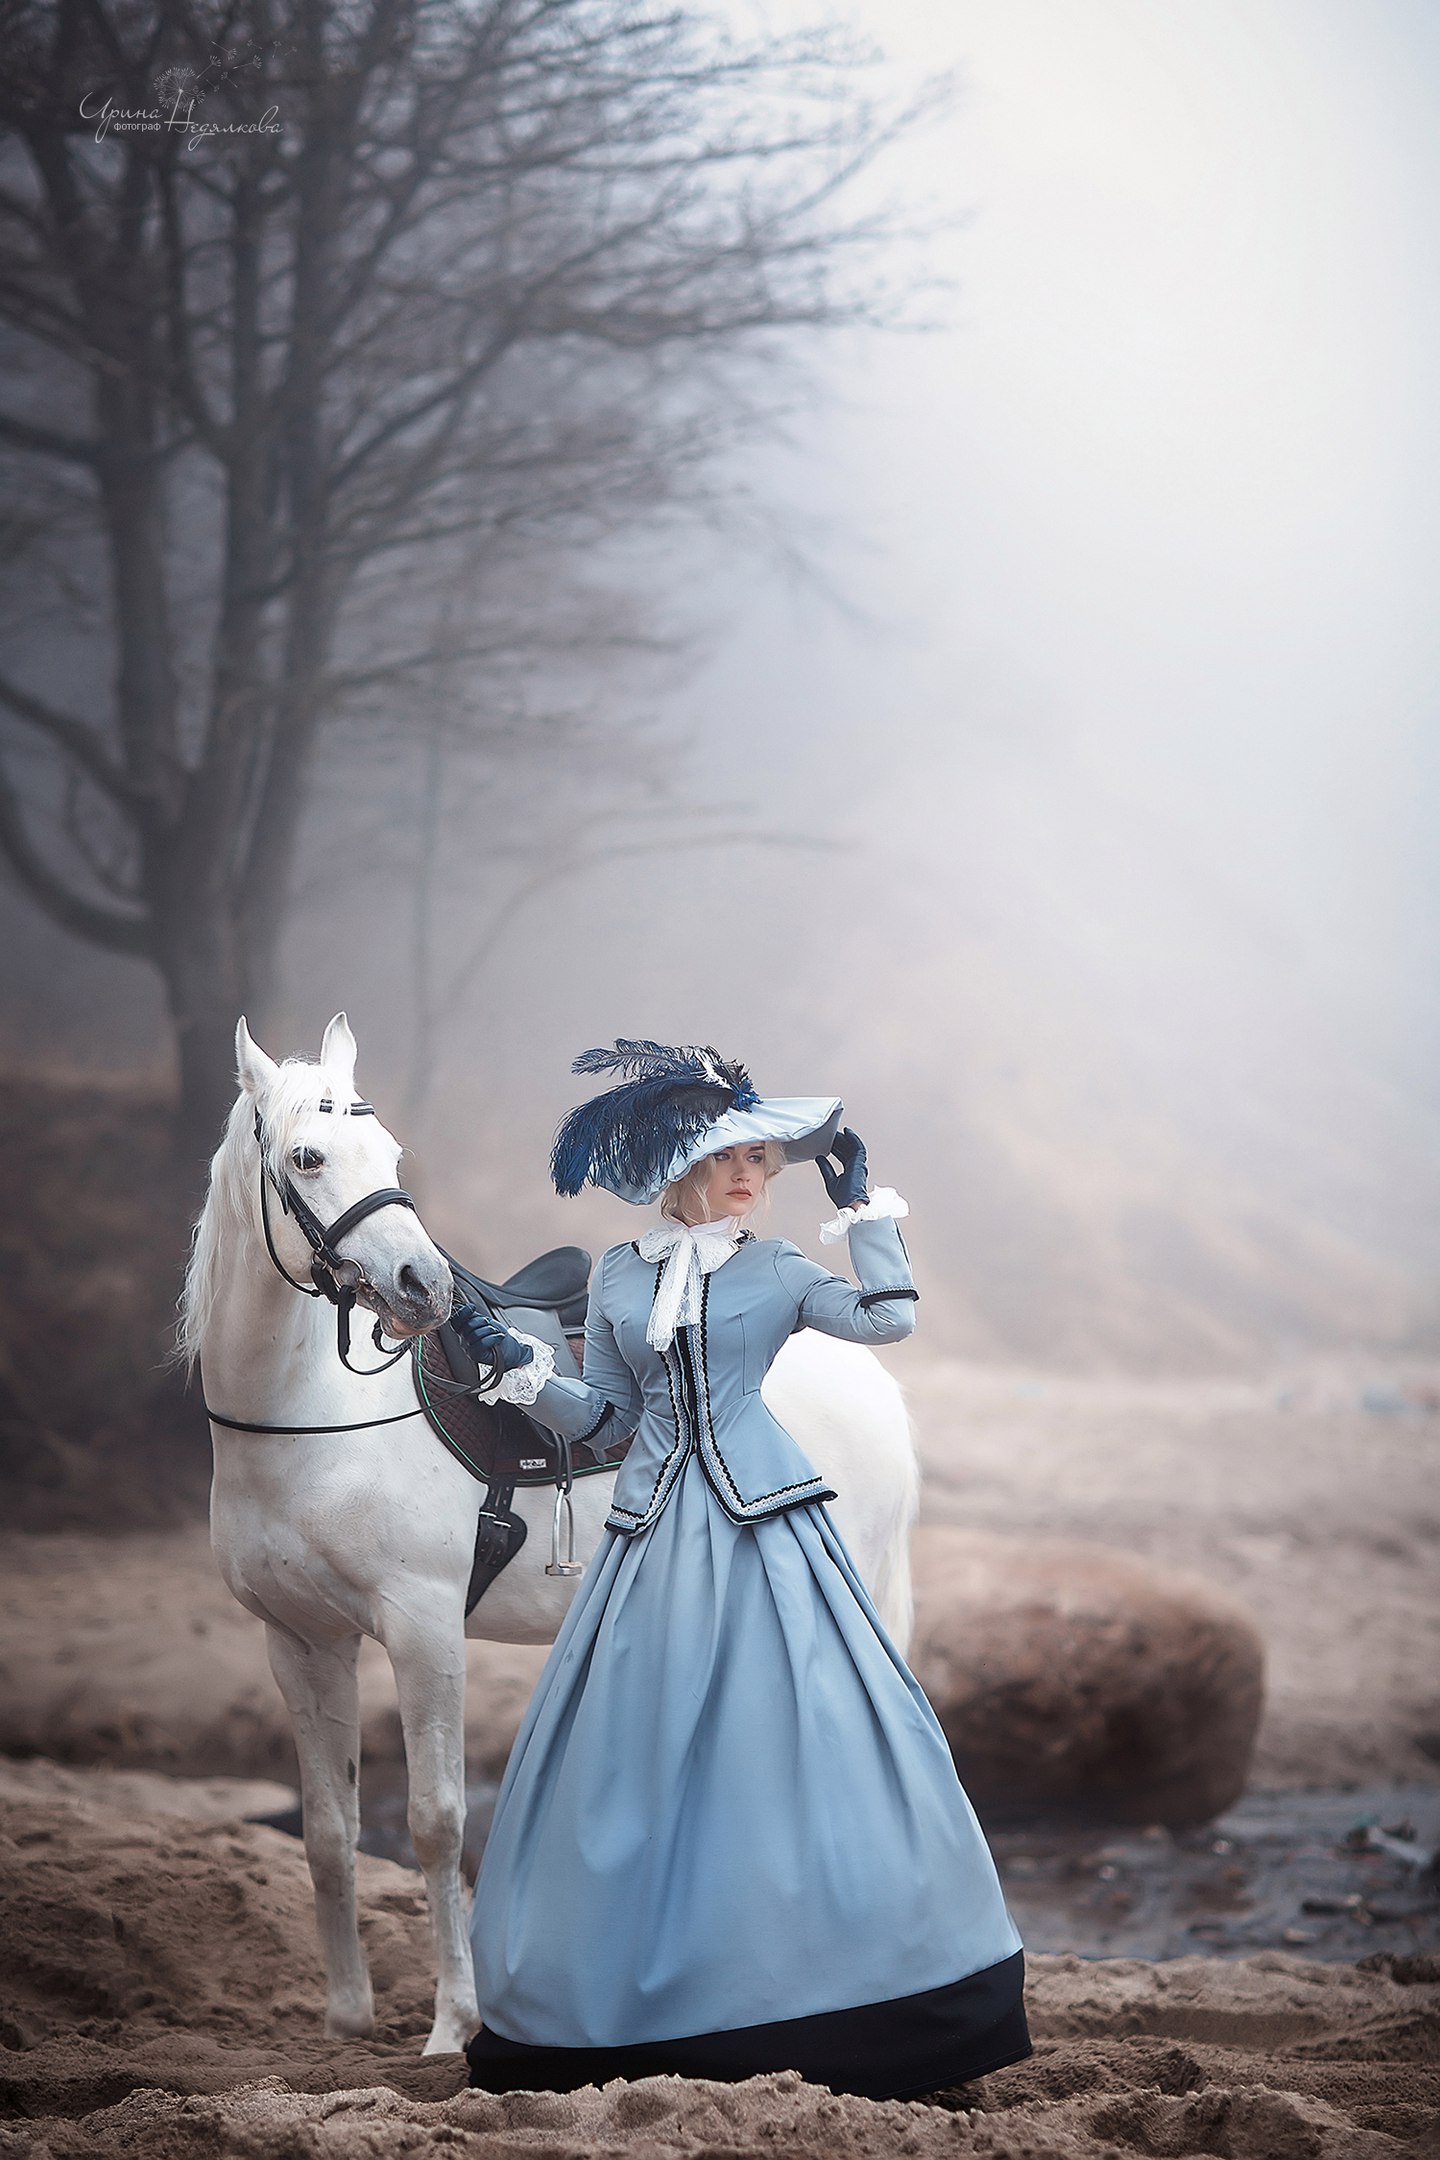 Фото Девушка в платье и в шляпе стоит с белым конем на песке около зера на фоне тумана, фотограф Ирина Недялкова